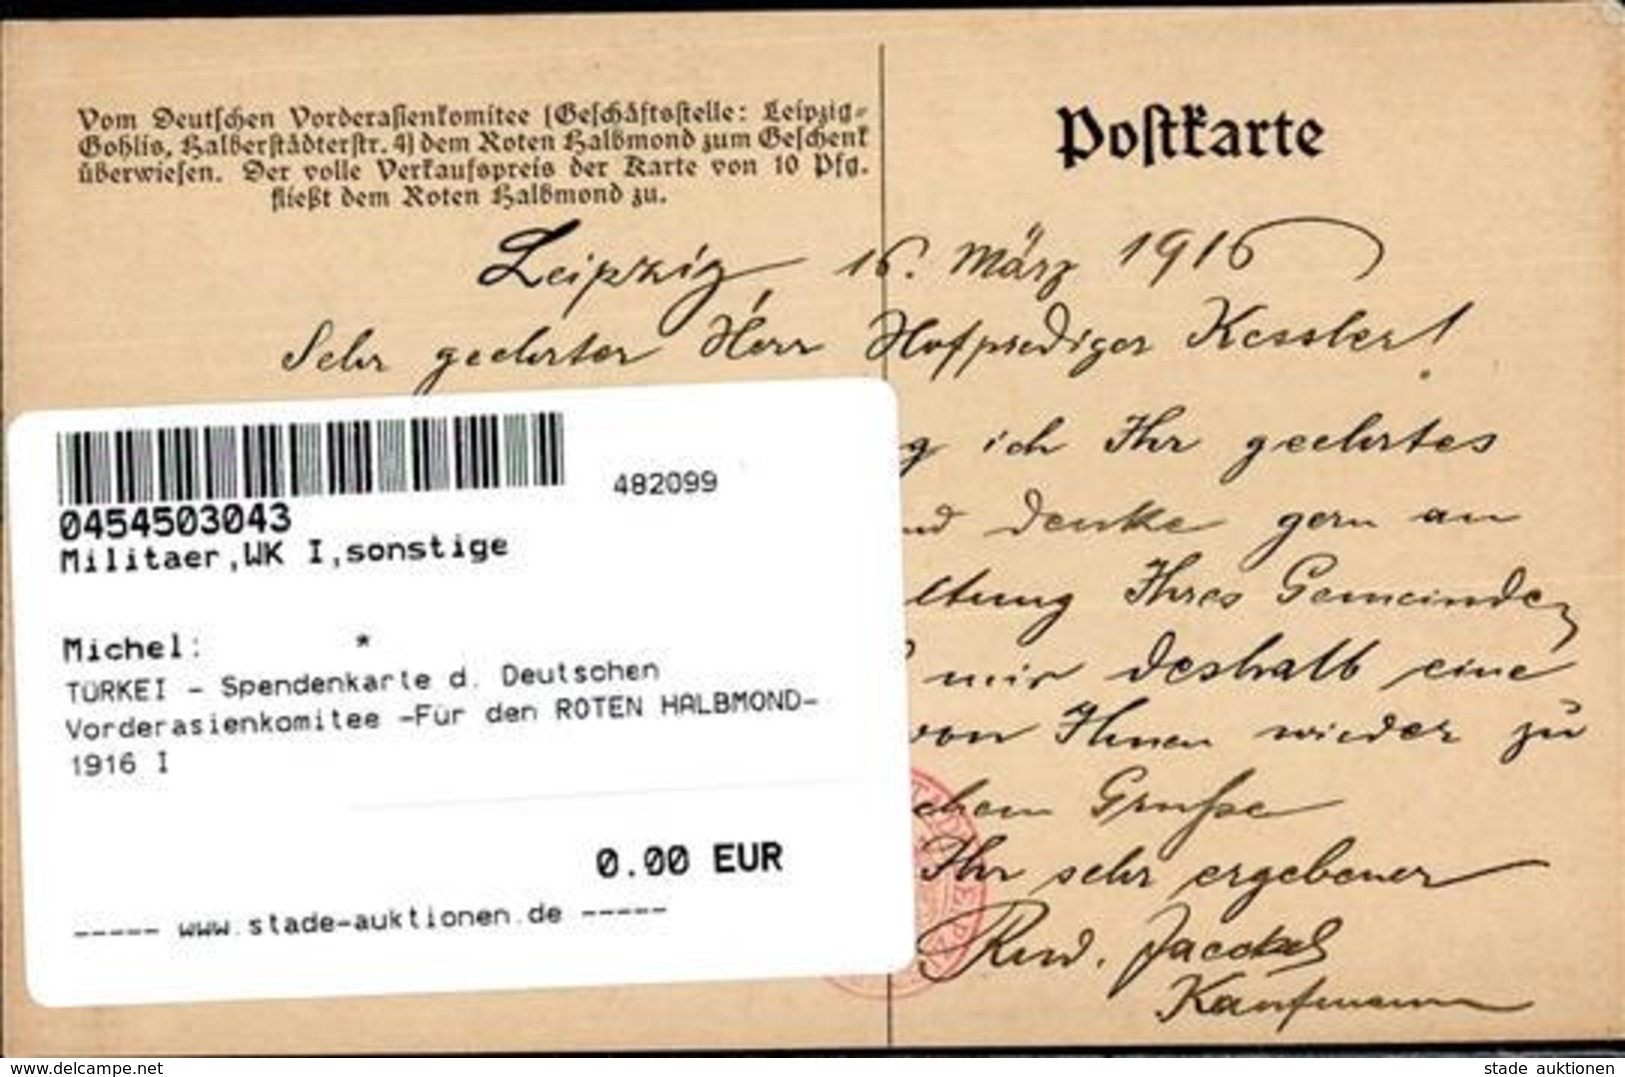 TÜRKEI - Spendenkarte D. Deutschen Vorderasienkomitee -Für Den ROTEN HALBMOND-,1916 I" - Weltkrieg 1914-18